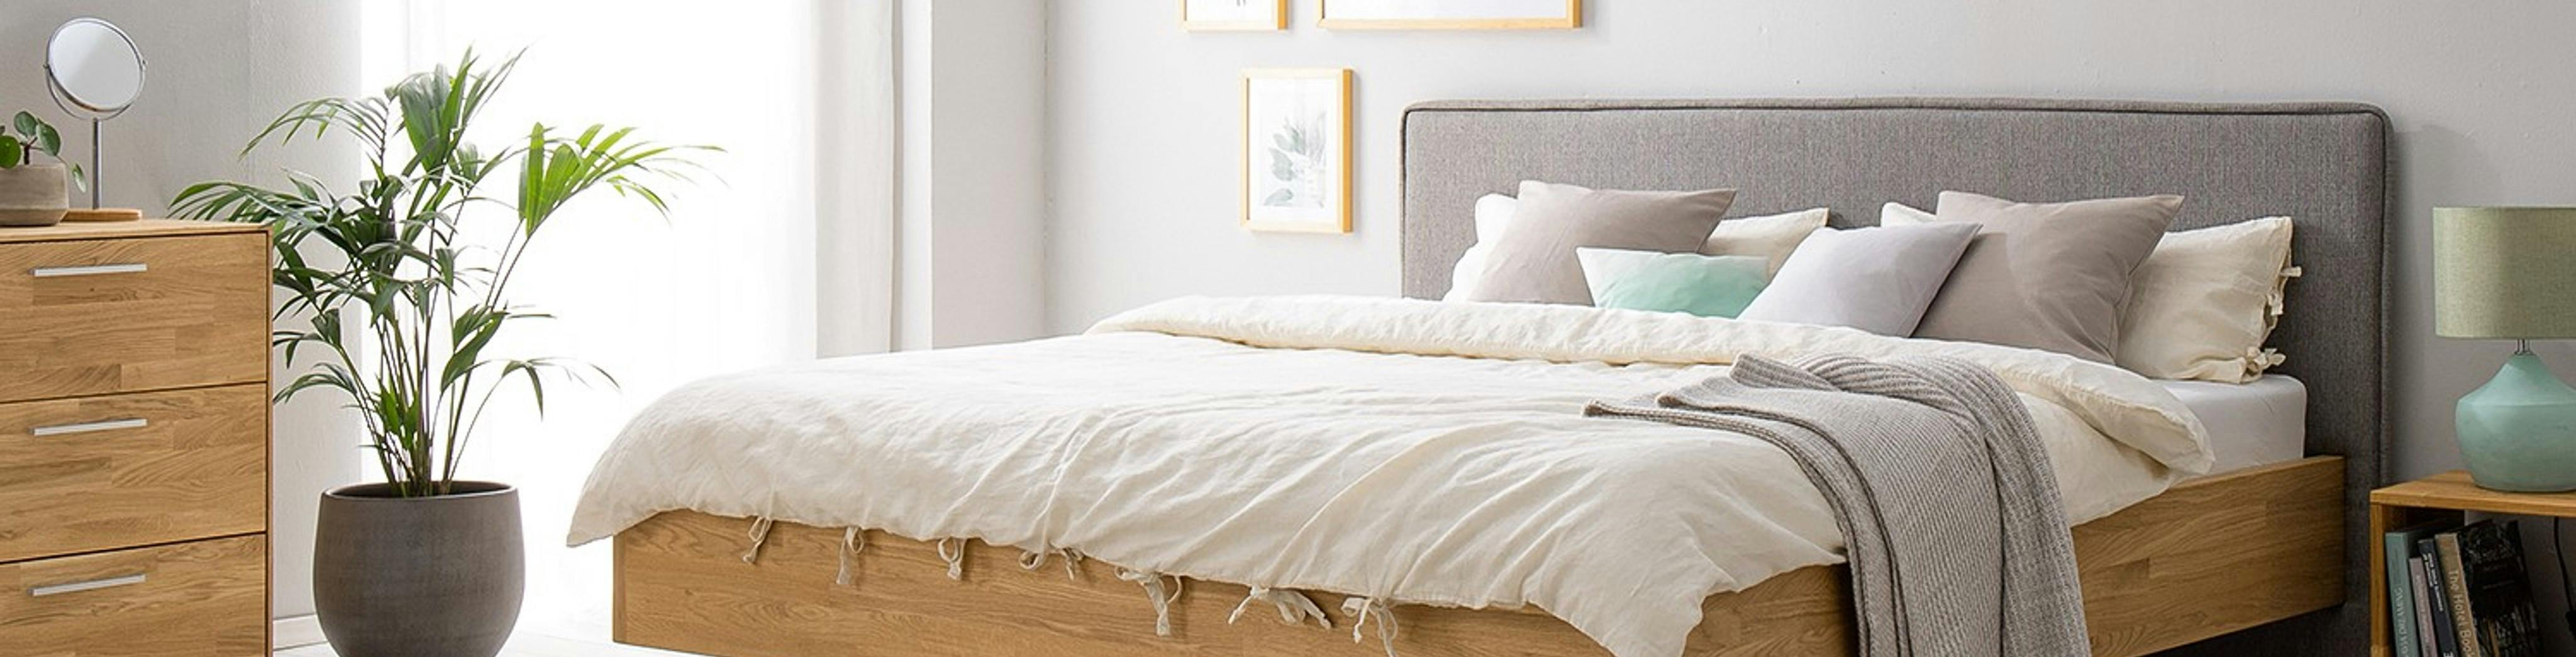 Holzbett mit gepolstertem Kopfteil in Grau, passende Schränke und große Zimmerpflanze